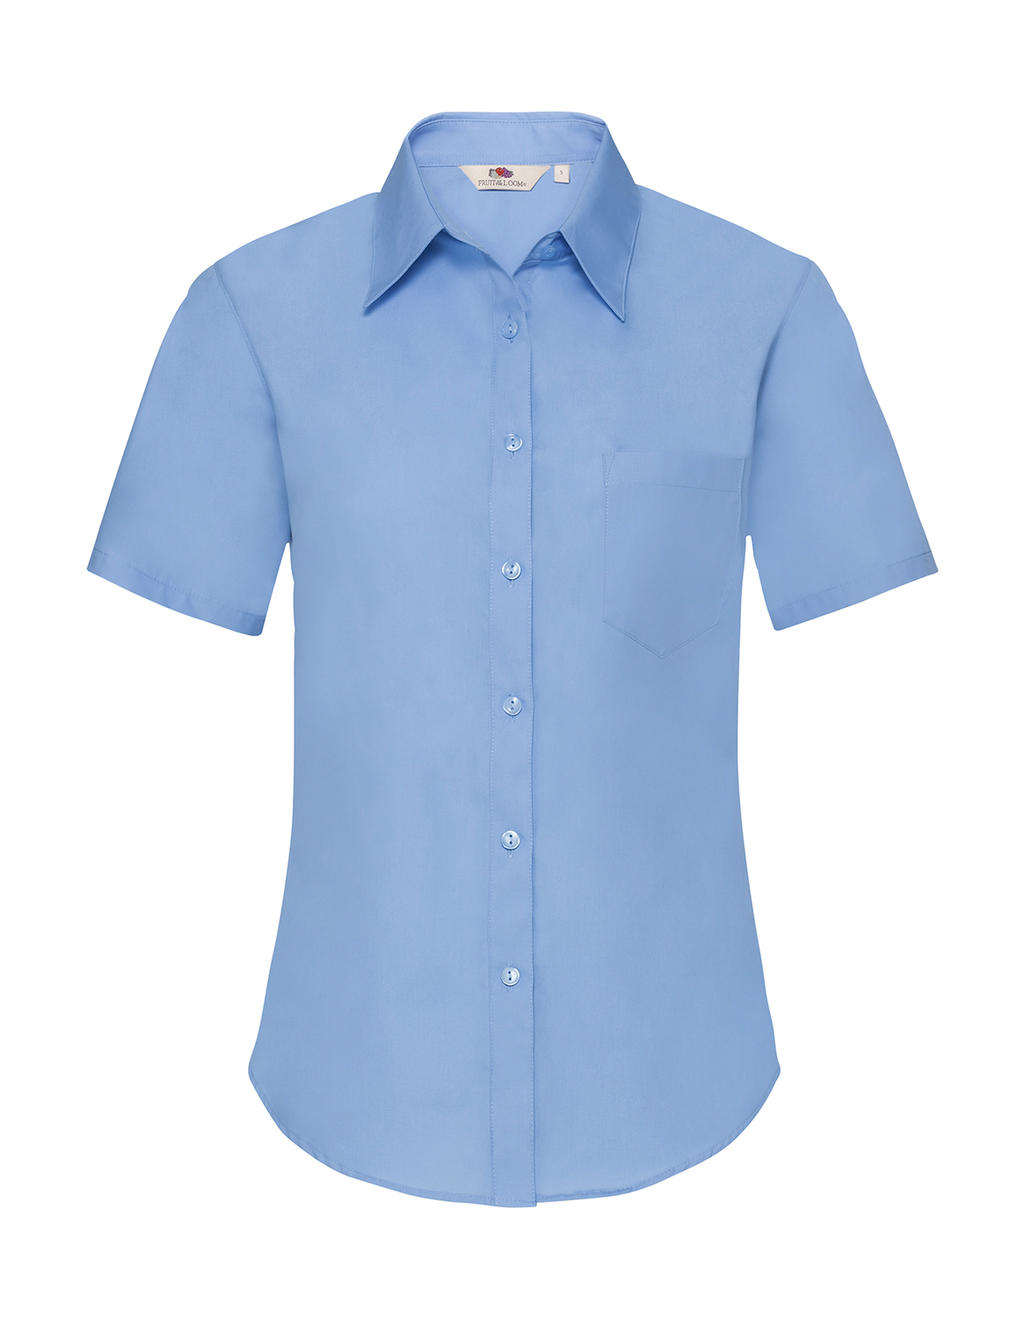  Ladies Poplin Shirt in Farbe Mid Blue